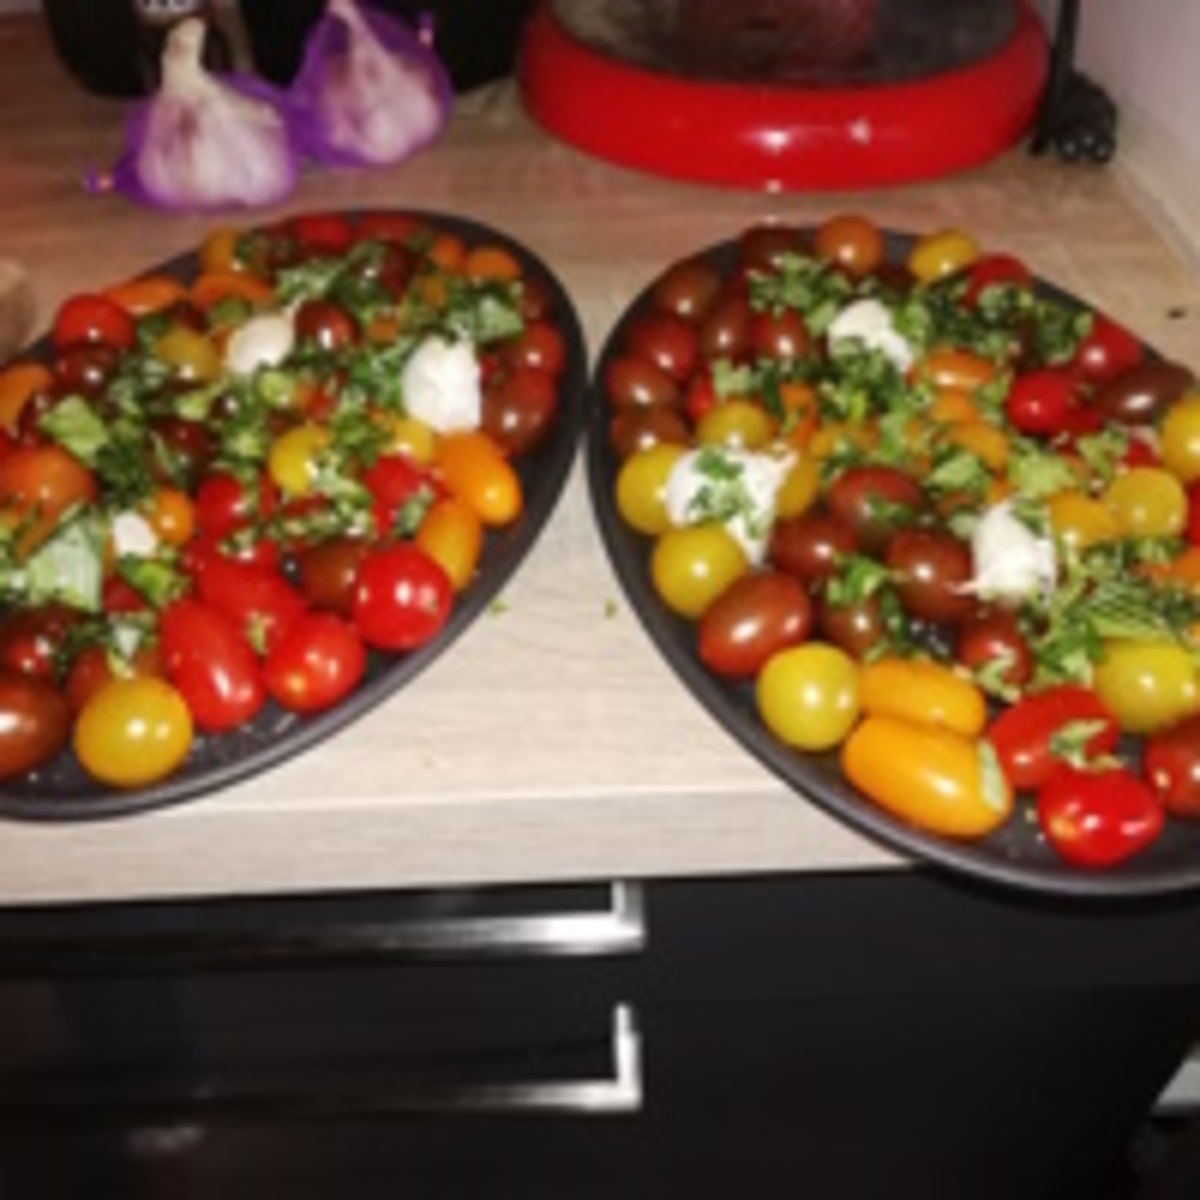 Recept - Gesmoorde tomaatjes in de Morso Forno